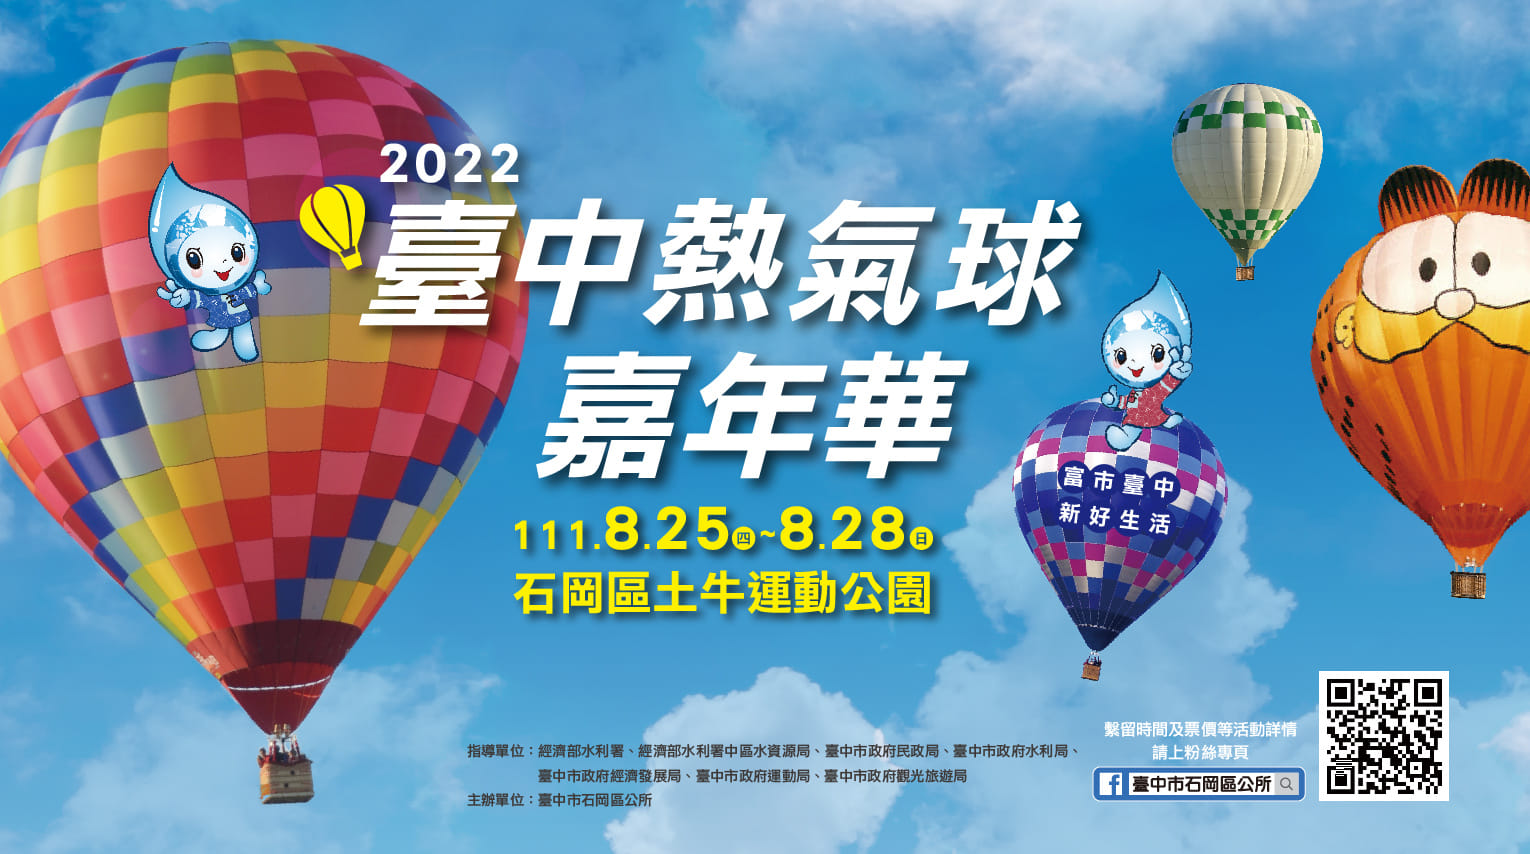 2022 台中石岡熱氣球嘉年華